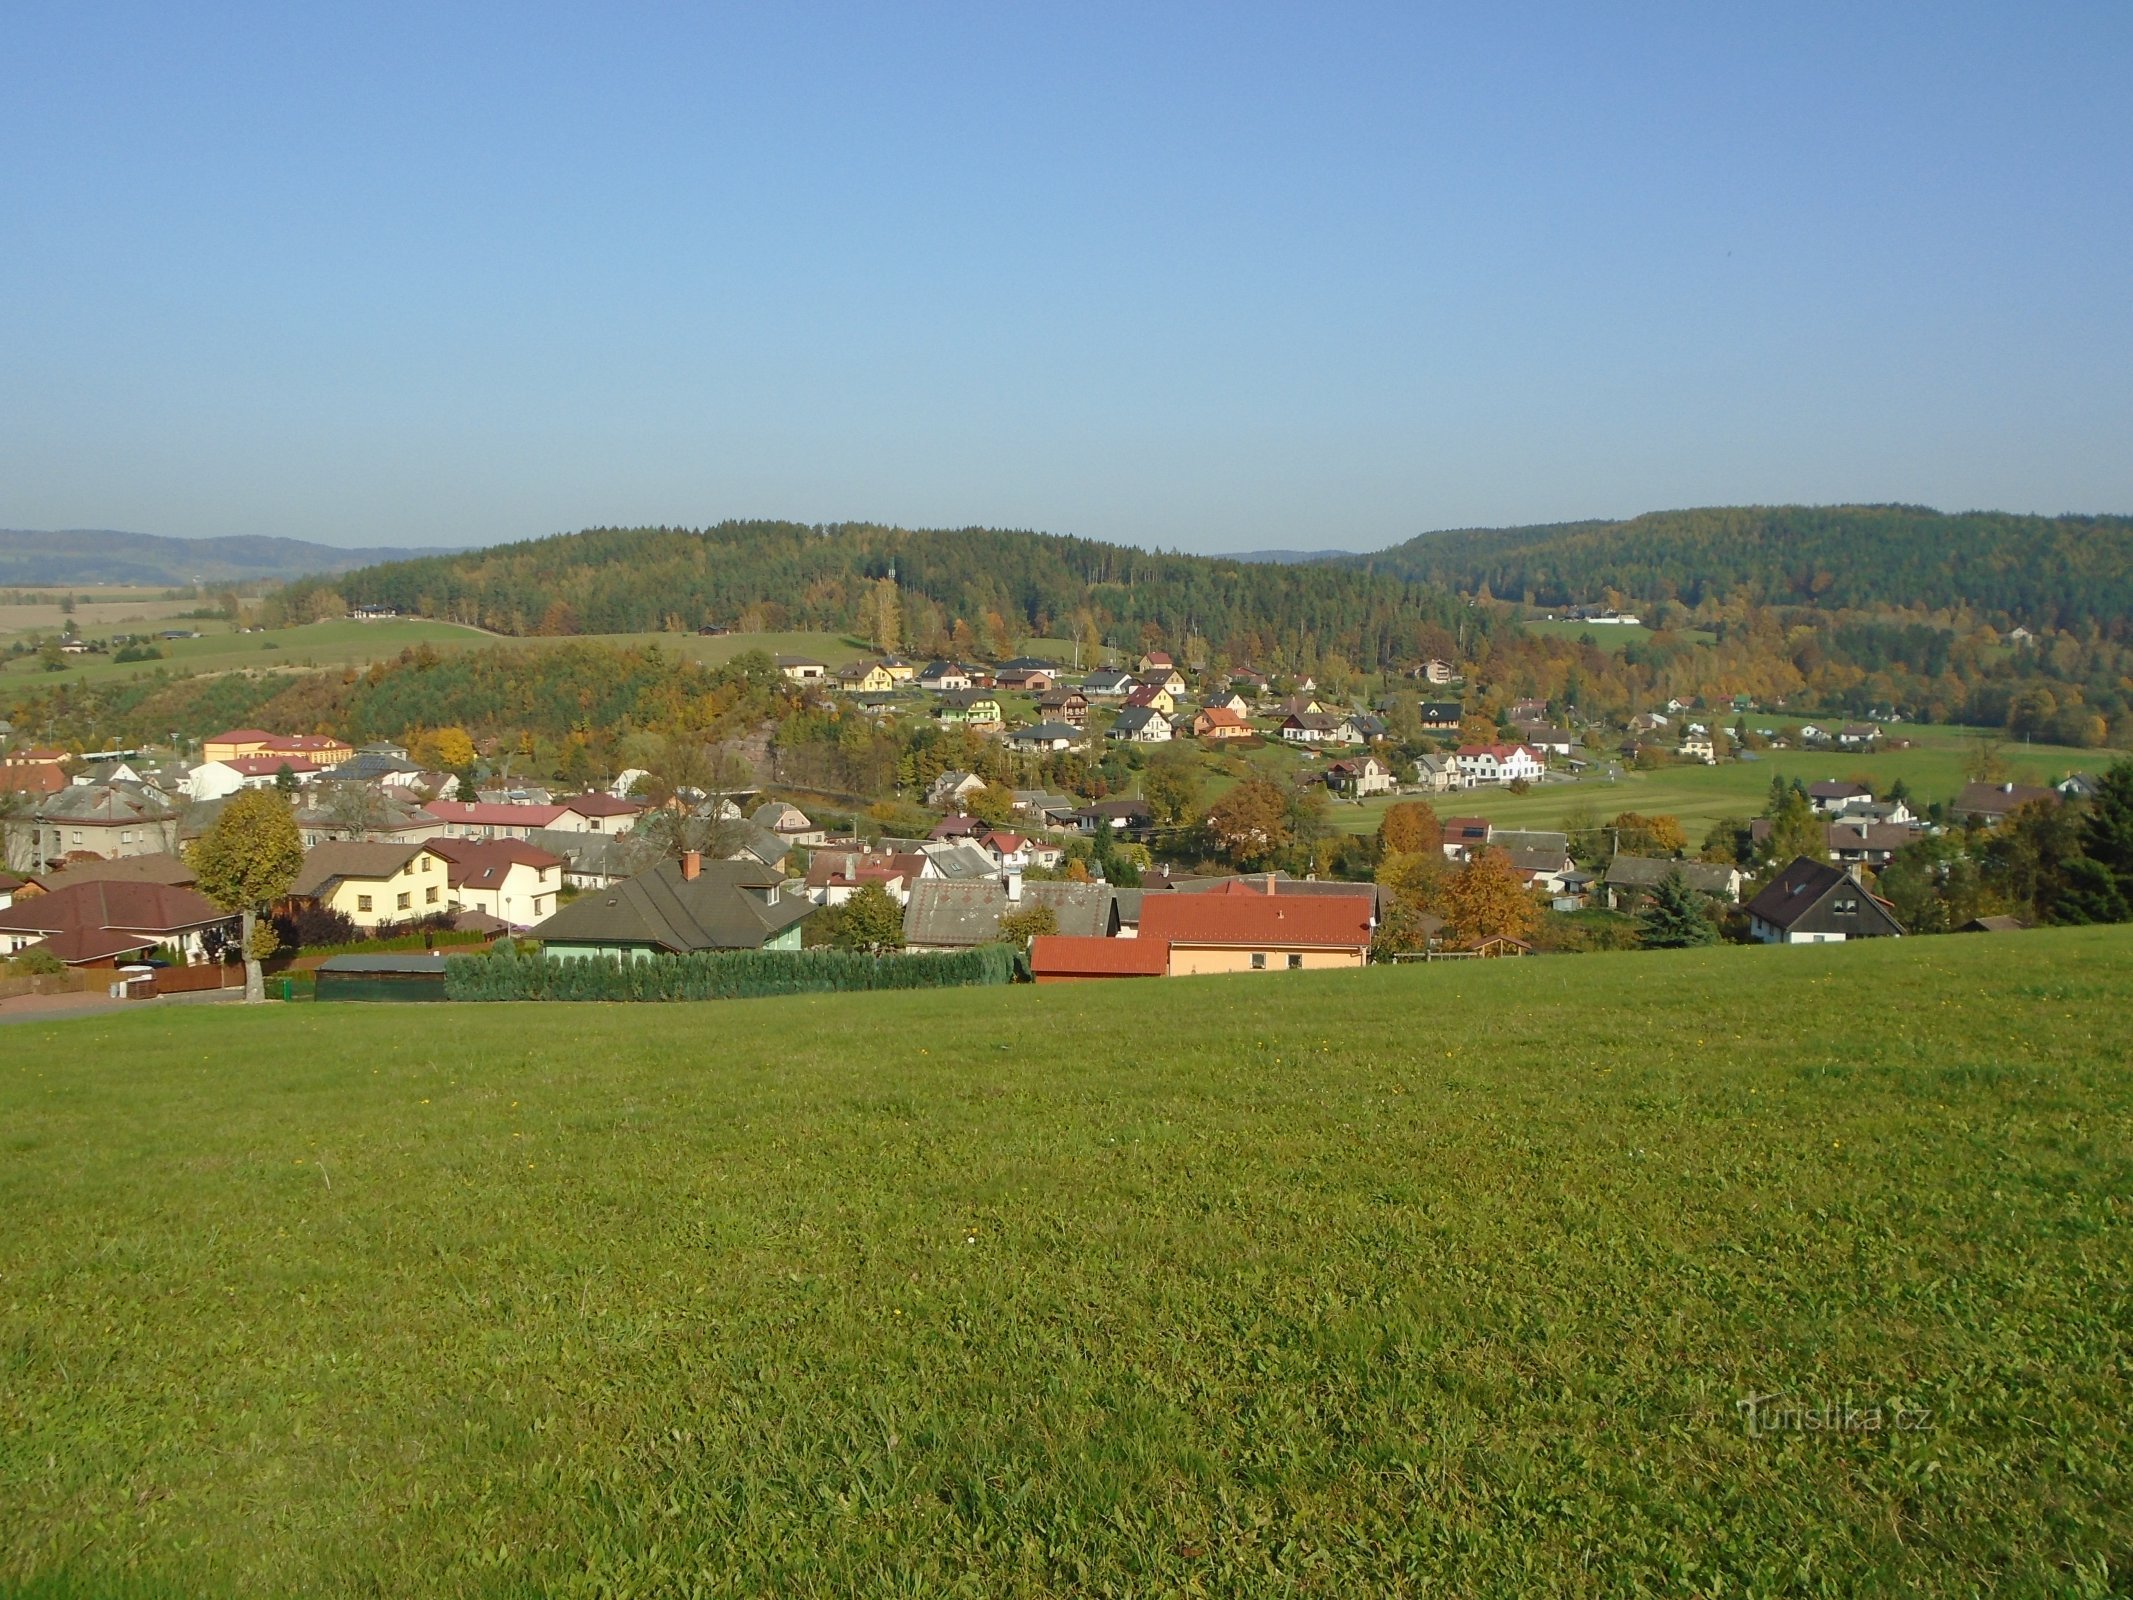 Vista di Havlovice, Háječek è al centro sopra il paese